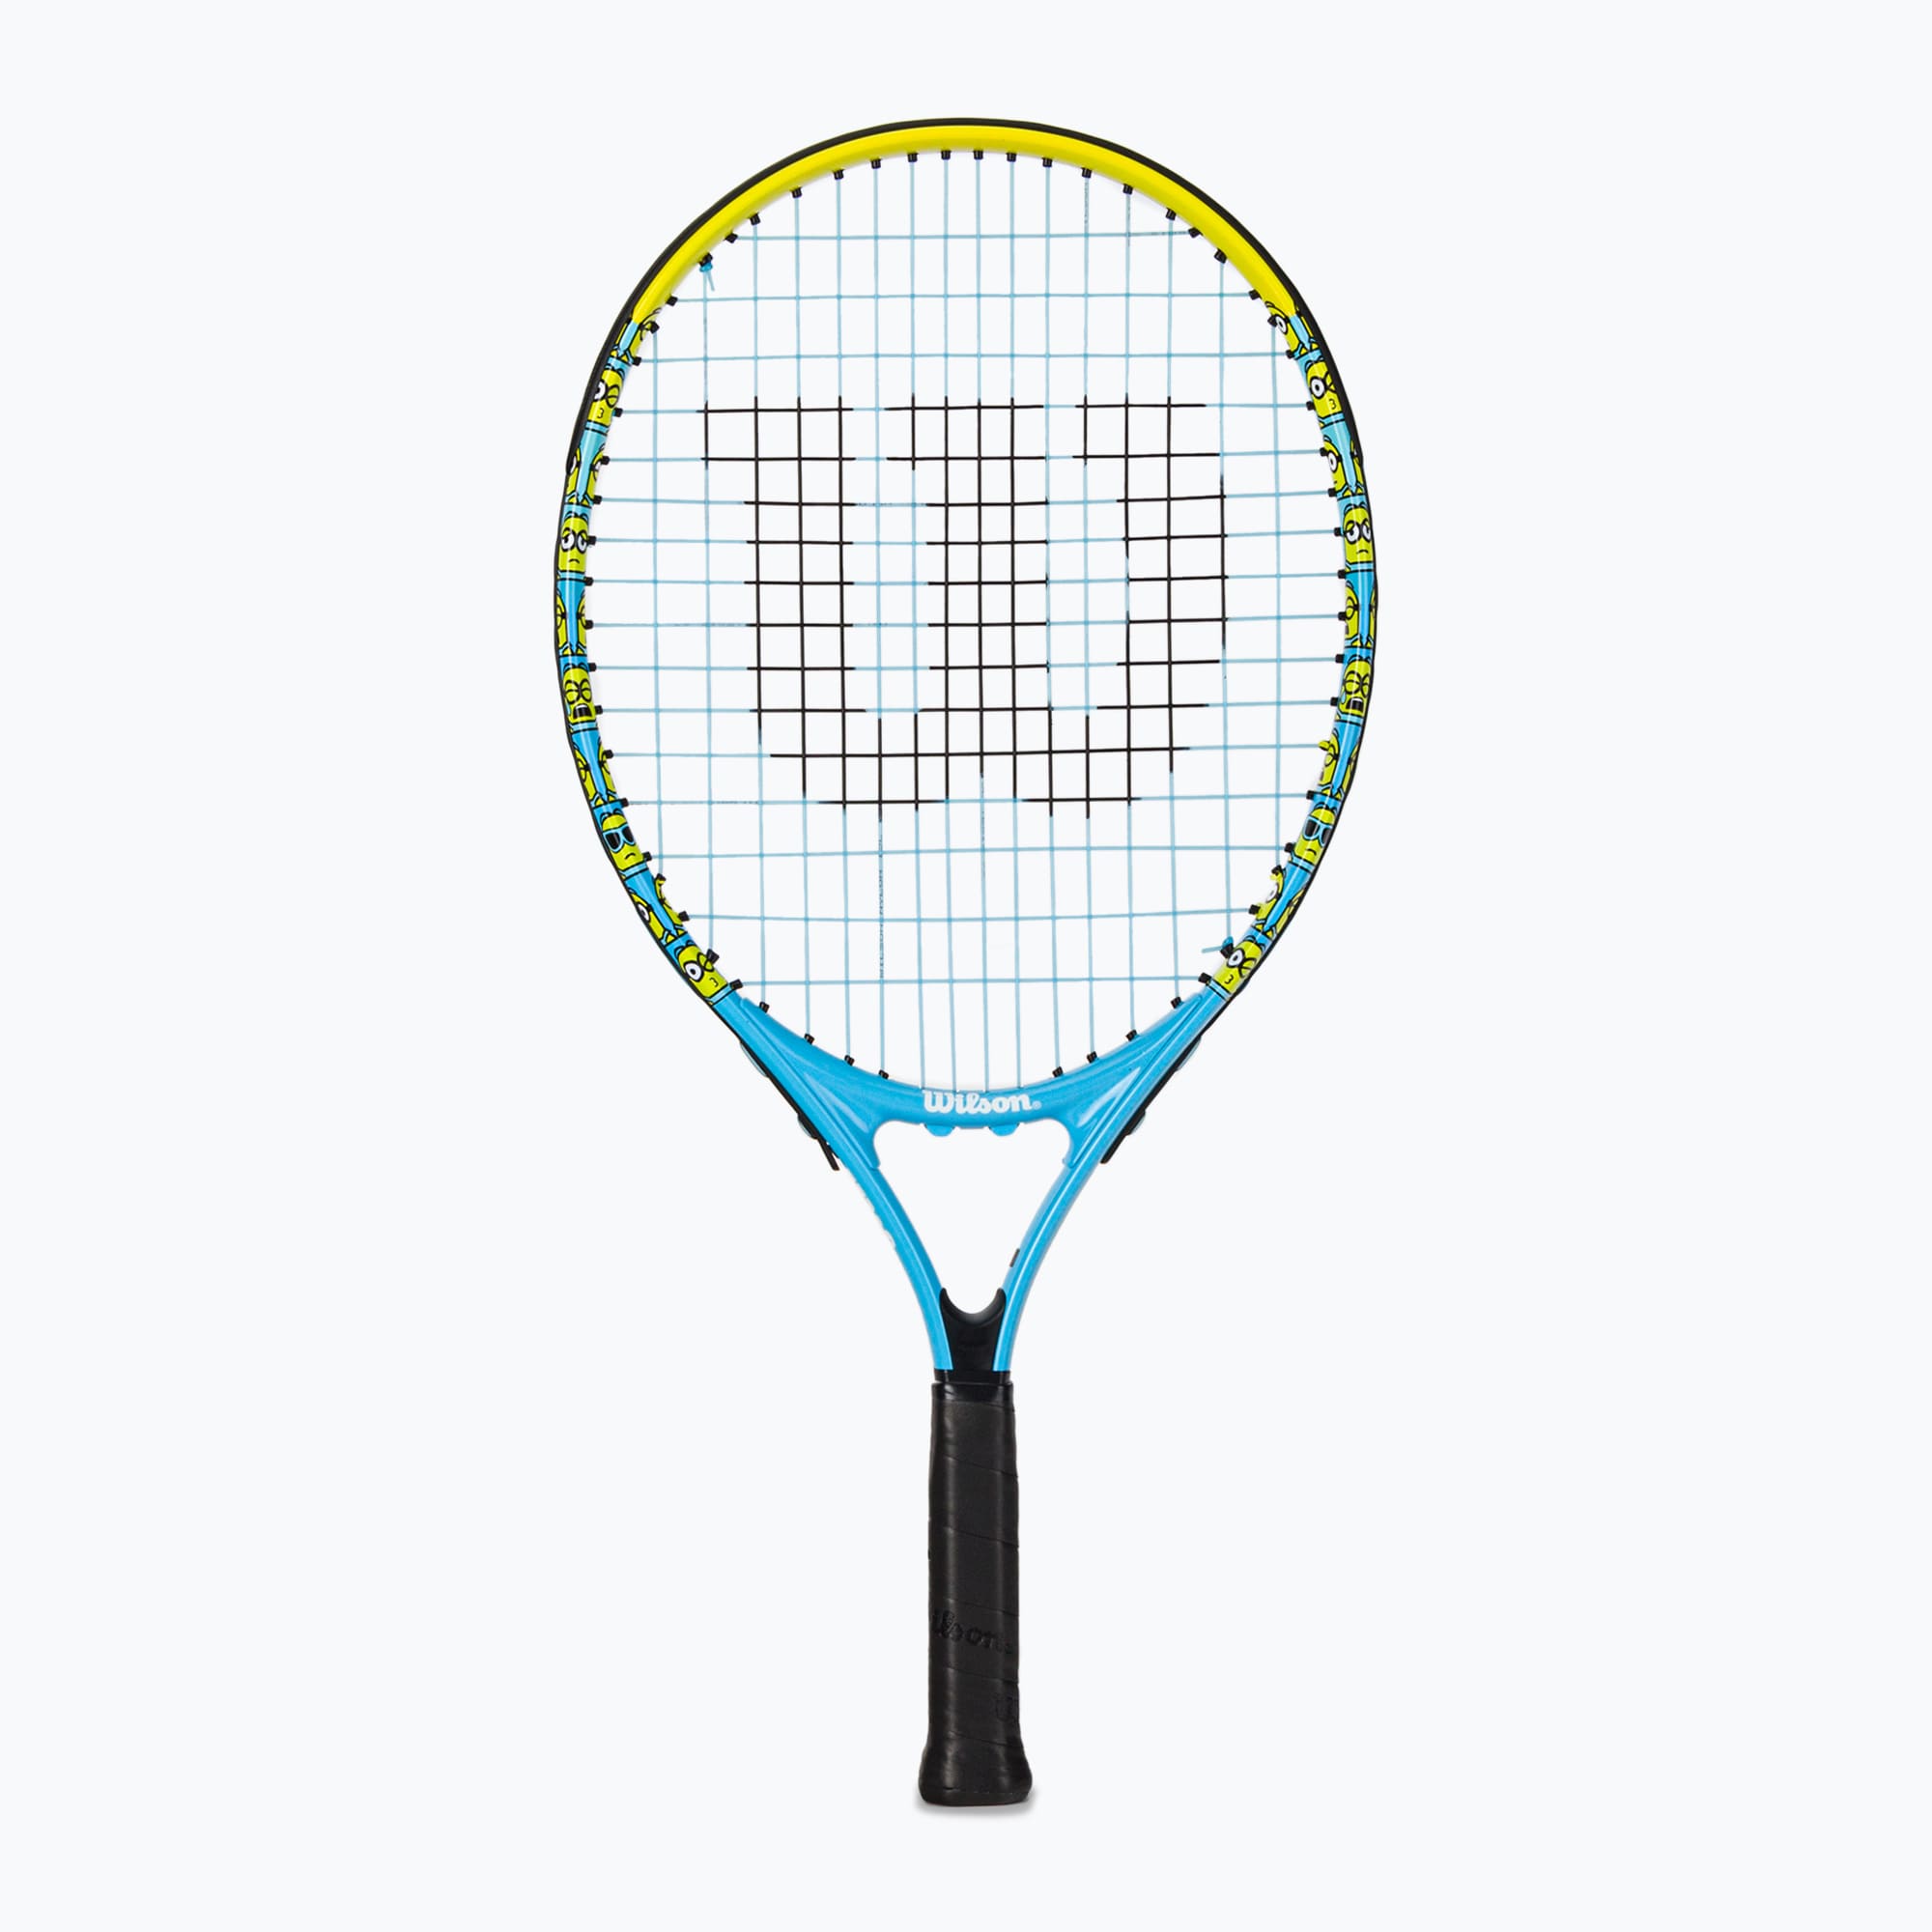 Rachetă de tenis pentru copii Wilson Minions 2.0 Jr 21 albastru/galben WR097110H